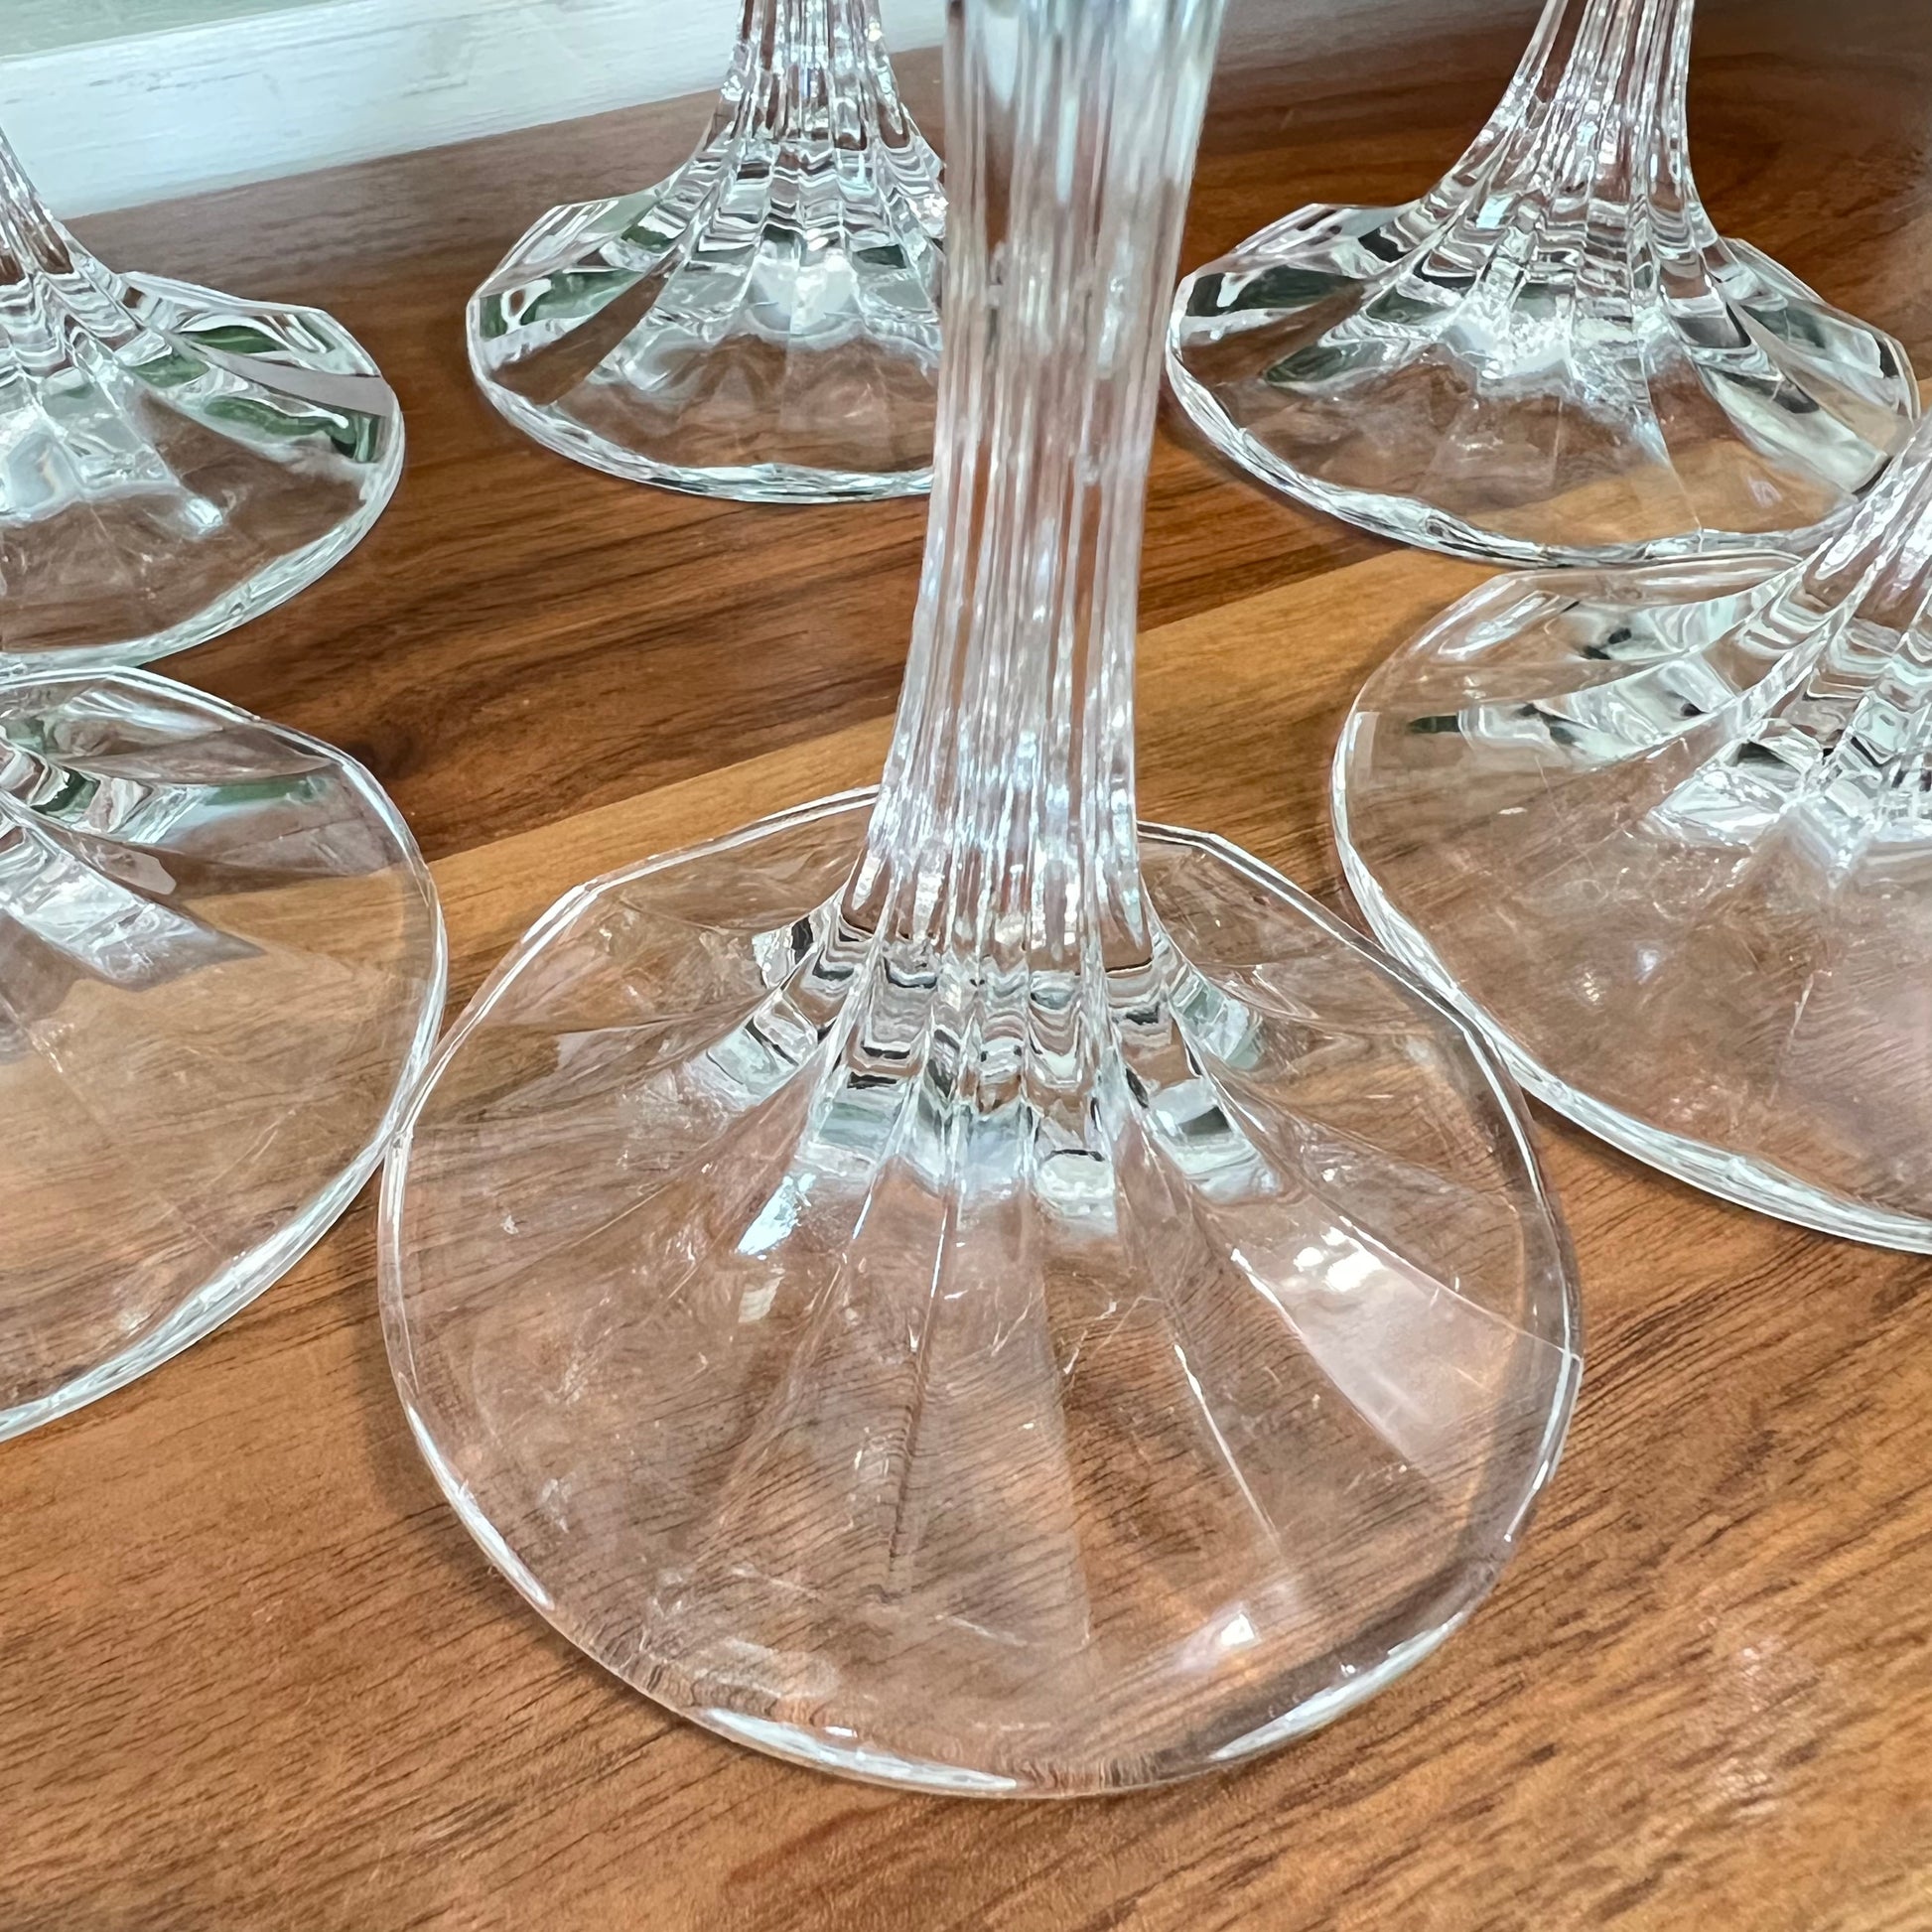 Set of 4 crystal water goblet stemware by designer Shannon Crystal